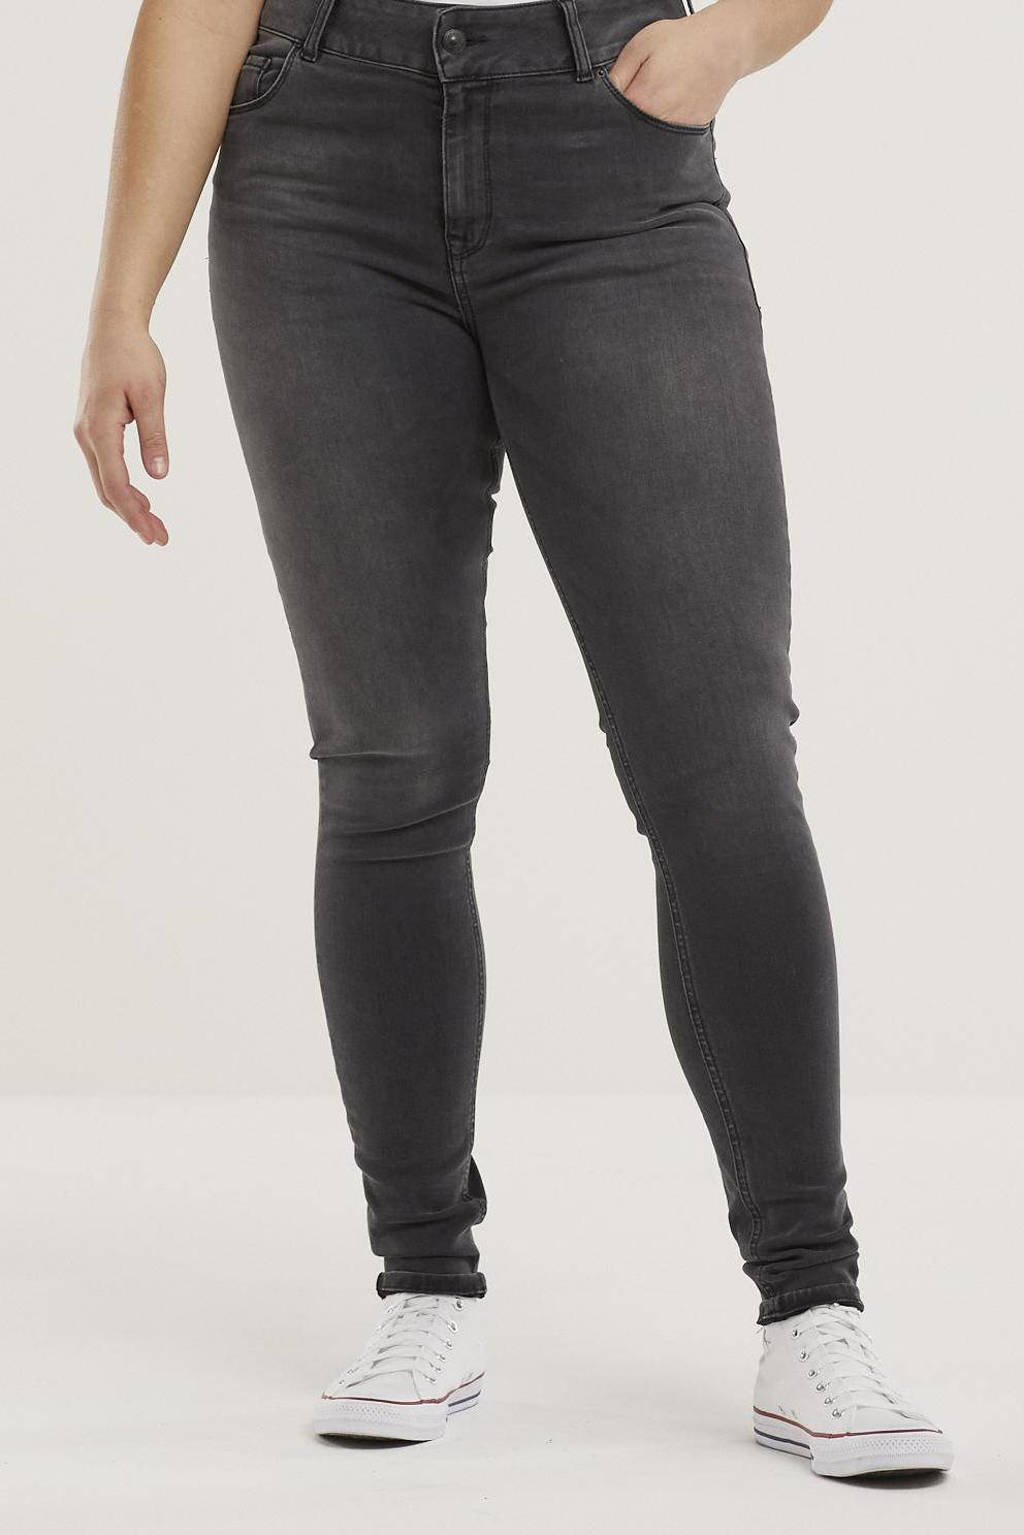 Zwarte dames LTB jeans Love to be skinny jeans Arly 51585 enna wash van stretchdenim met high waist en rits- en drukknoopsluiting